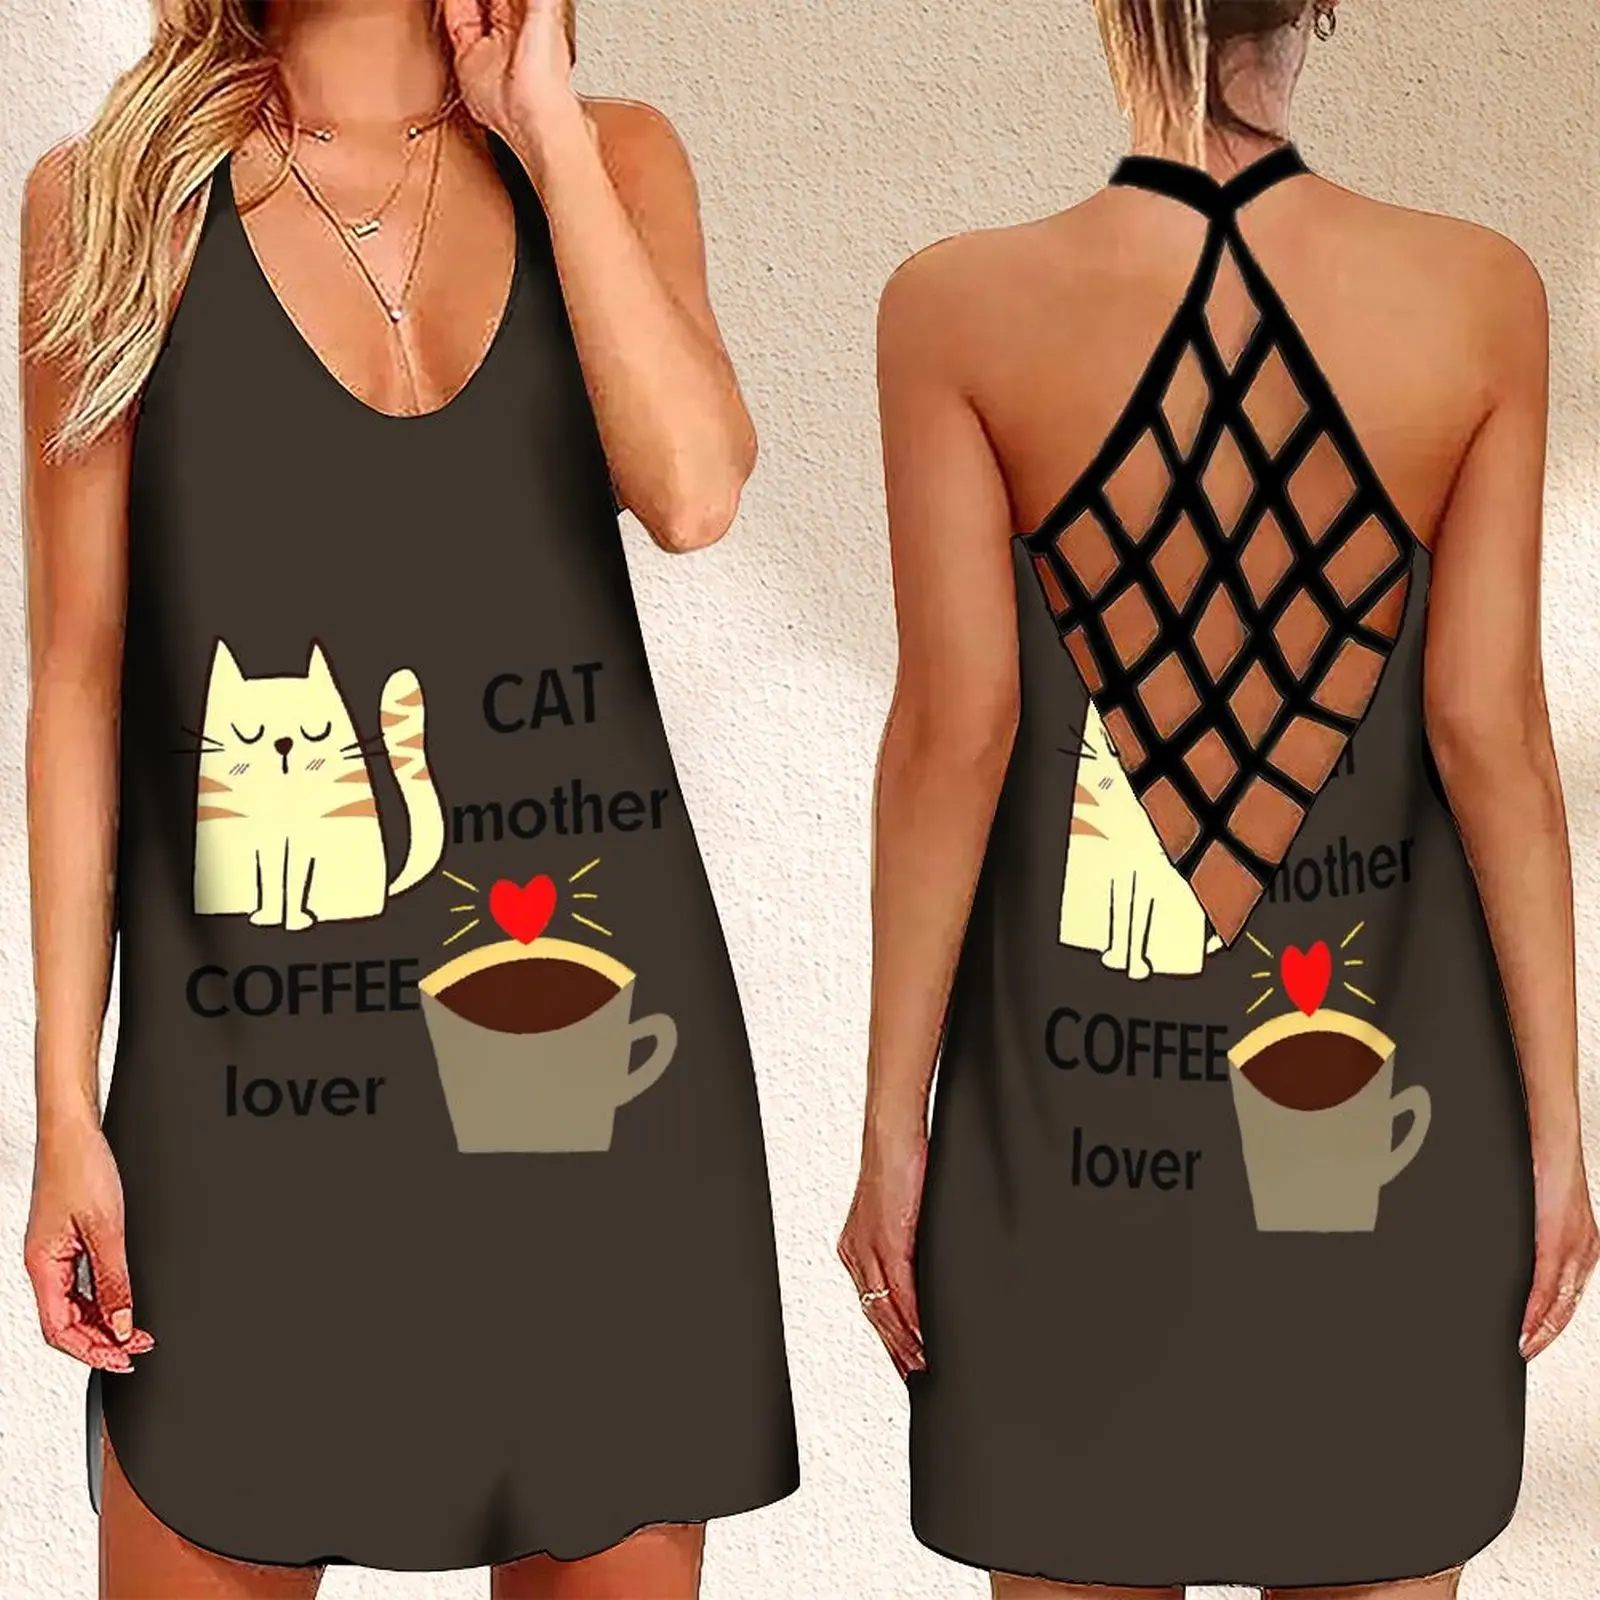 

Fashion Women's Criss Cross Backless Sleeveless Dress SummerCat Mother Coffee Lover Print Women's Summer Dress